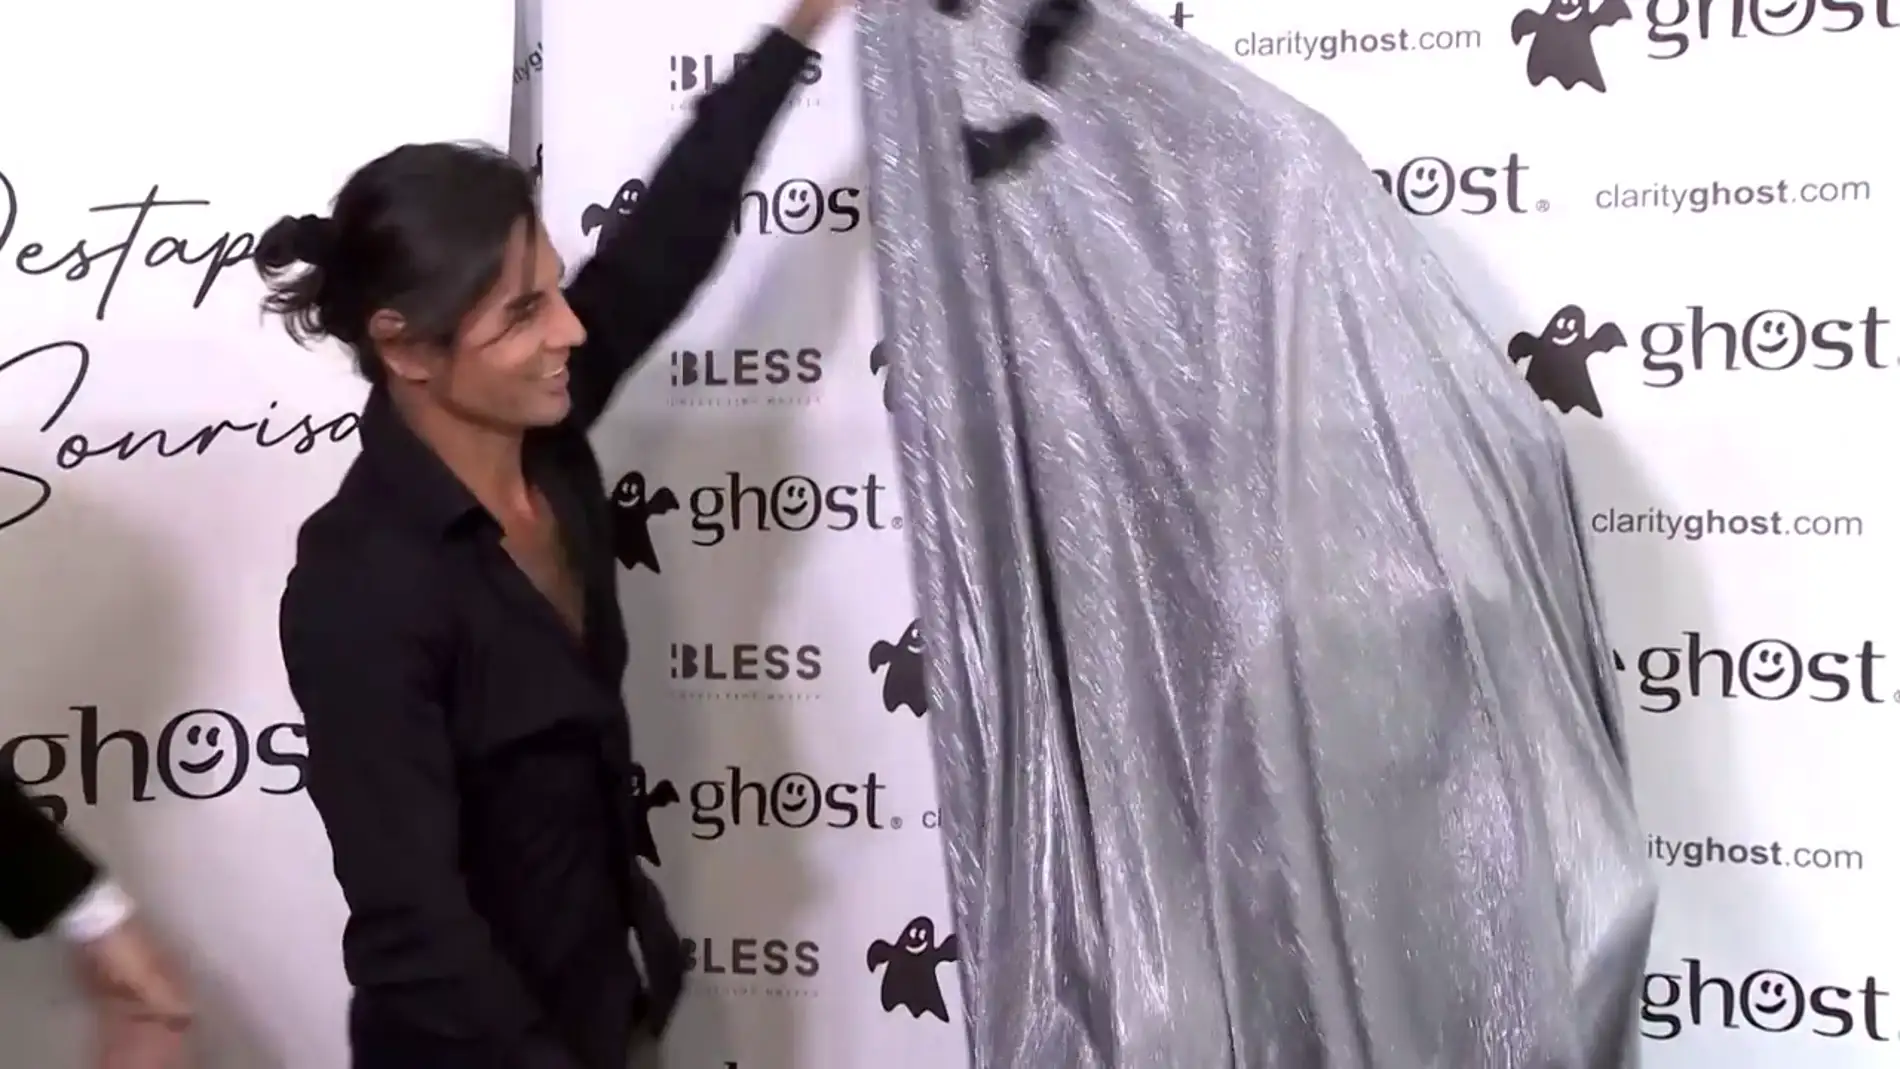 Julio José Iglesias sorprende al presentar a su nueva novia destapándola bajo un disfraz de fantasma